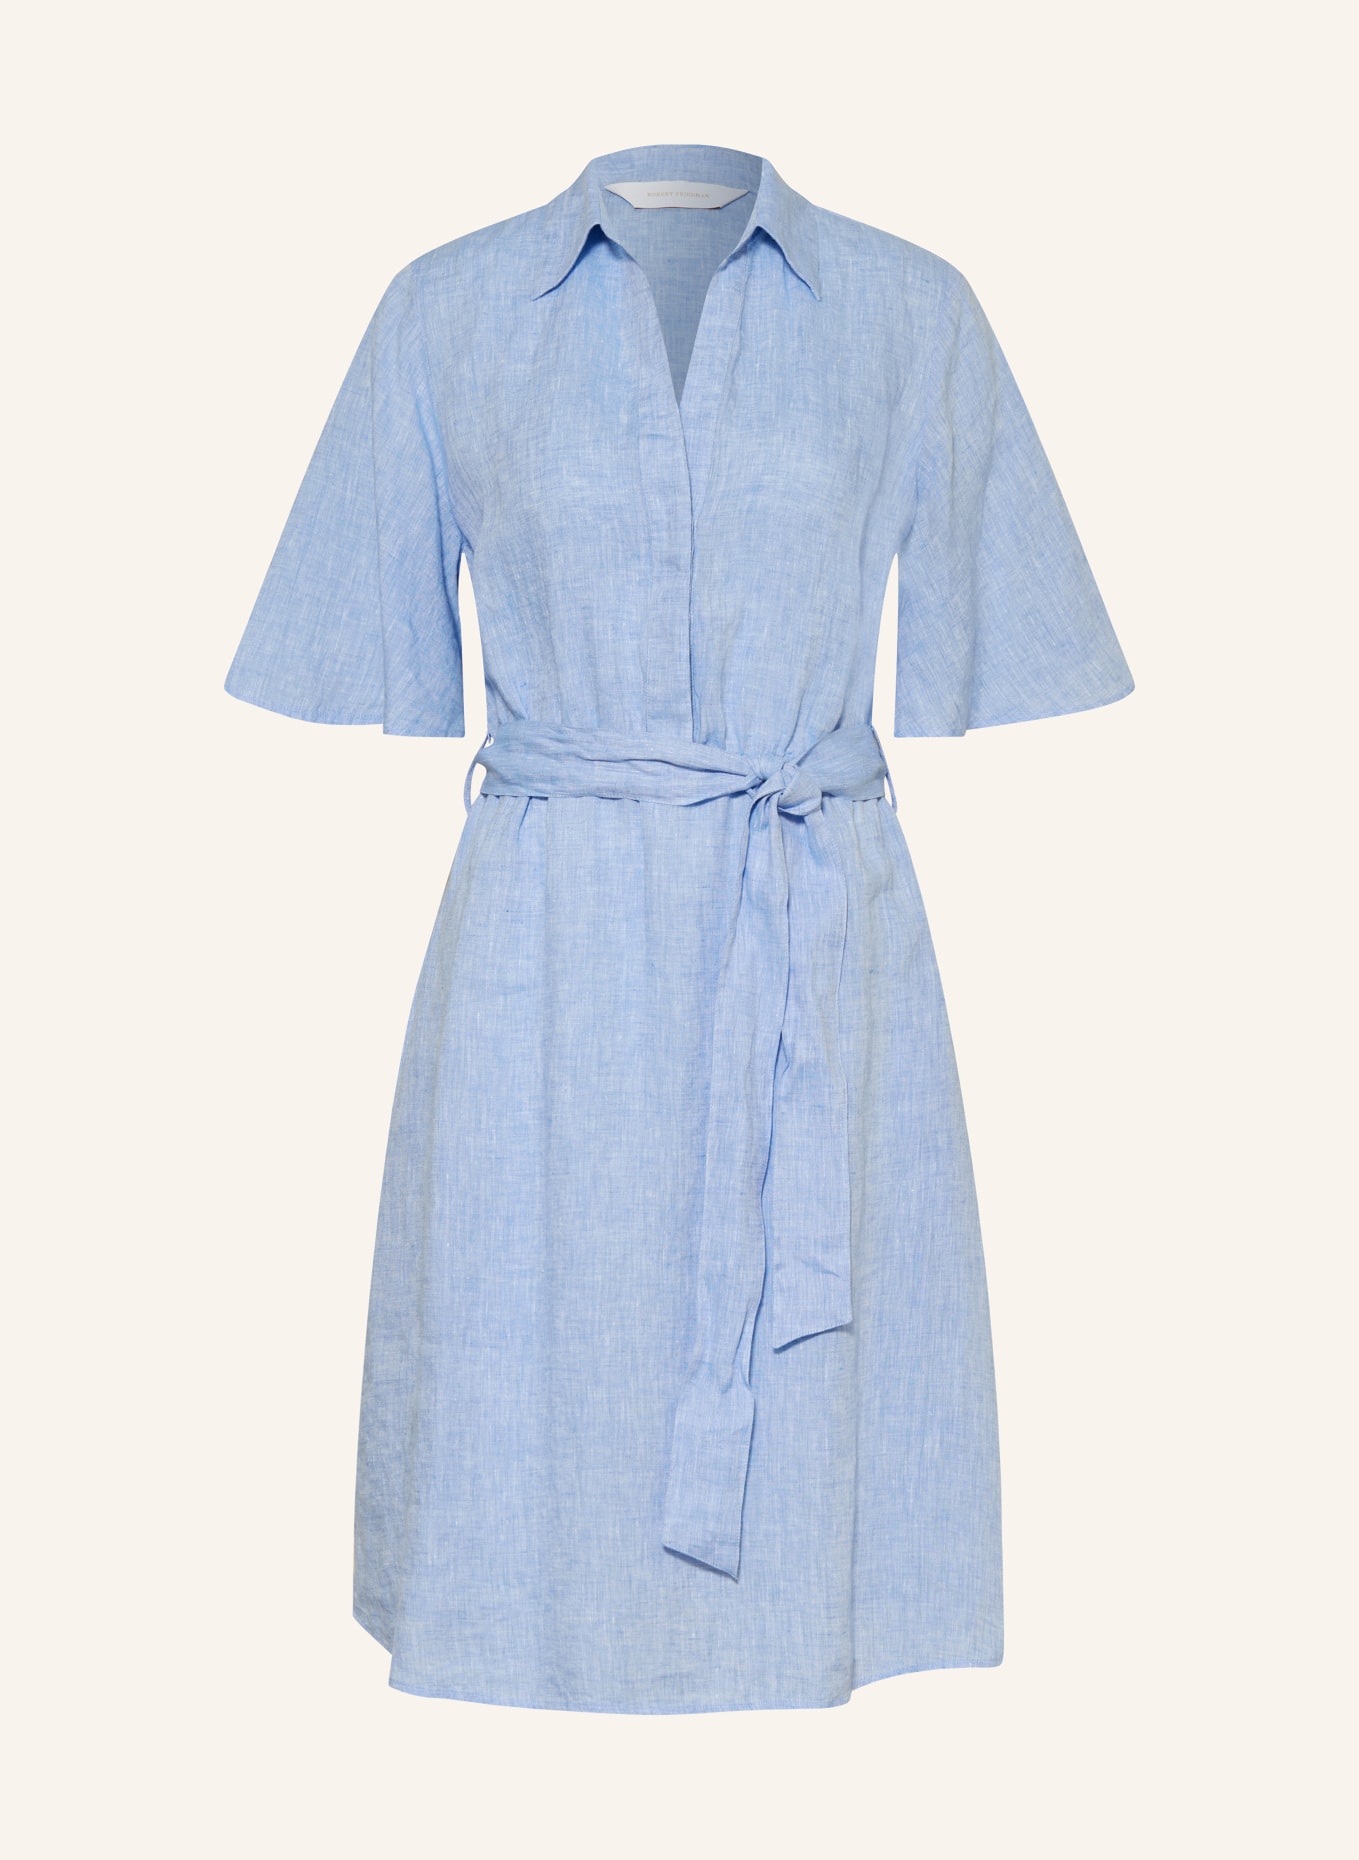 ROBERT FRIEDMAN Linen dress ILARYL, Color: LIGHT BLUE (Image 1)